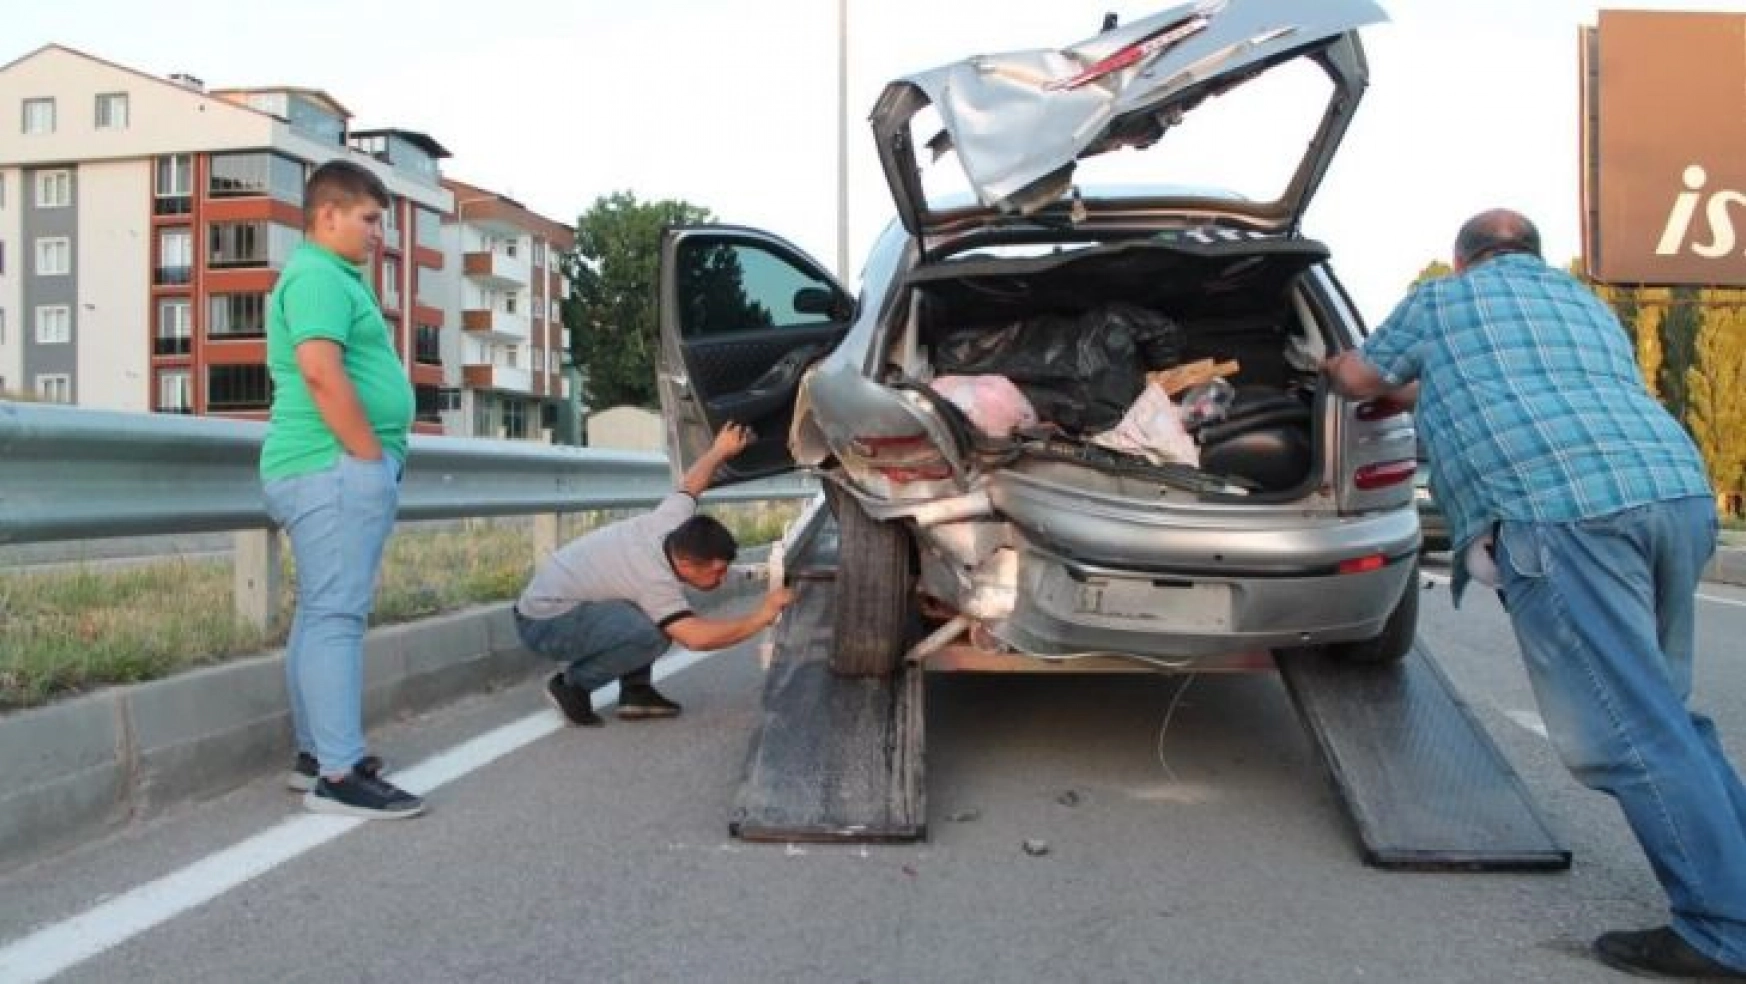 Erzurum'un 7 aylık trafik kaza bilançosu açıklandı